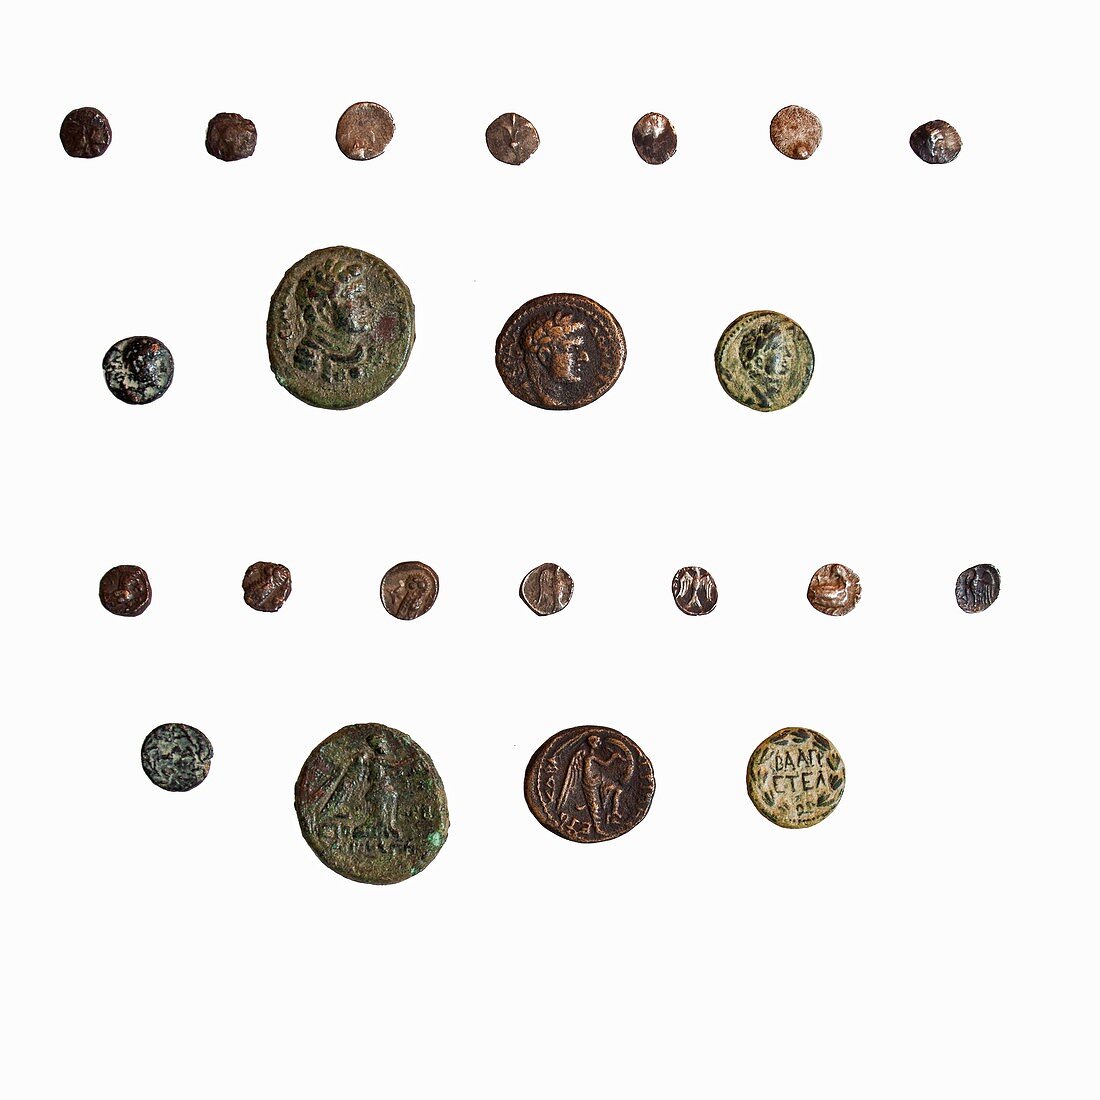 4th Century BCE coin